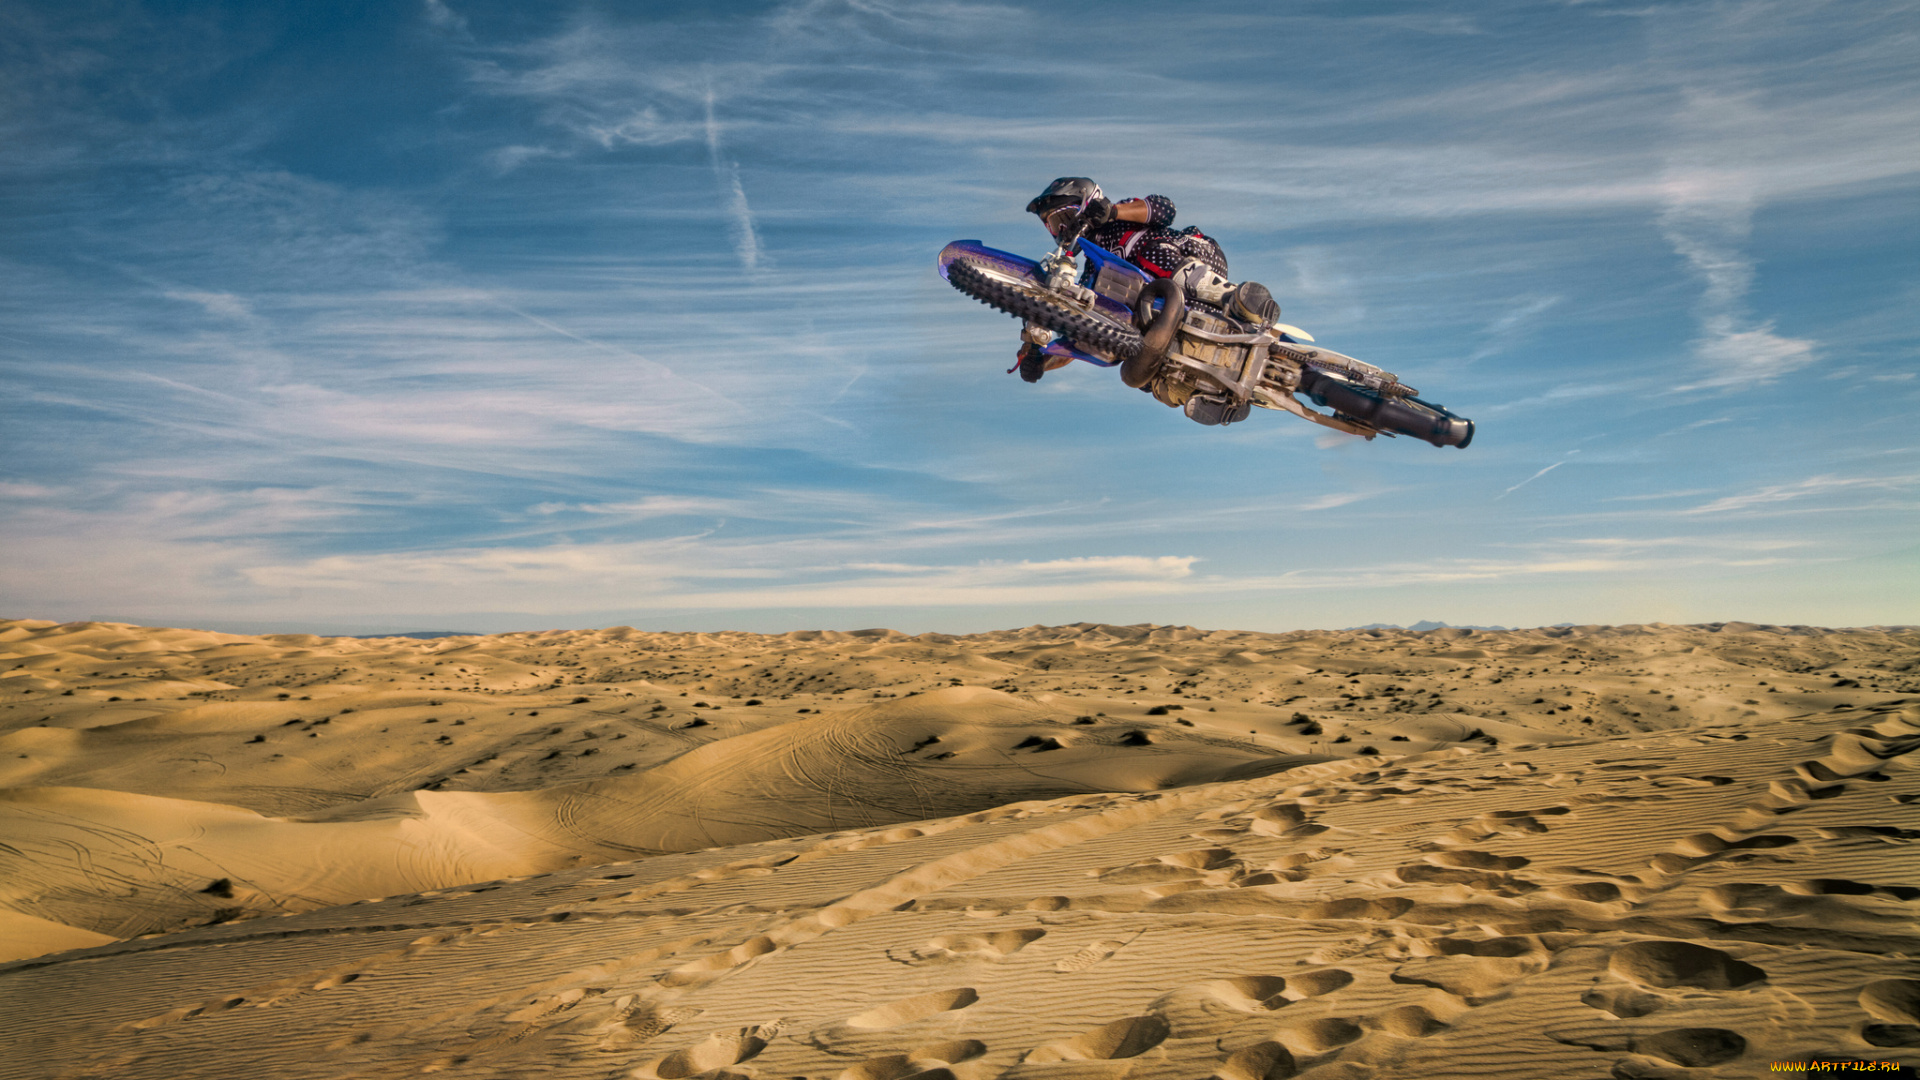 спорт, мотокросс, байк, гонщик, прыжок, песок, пустыня